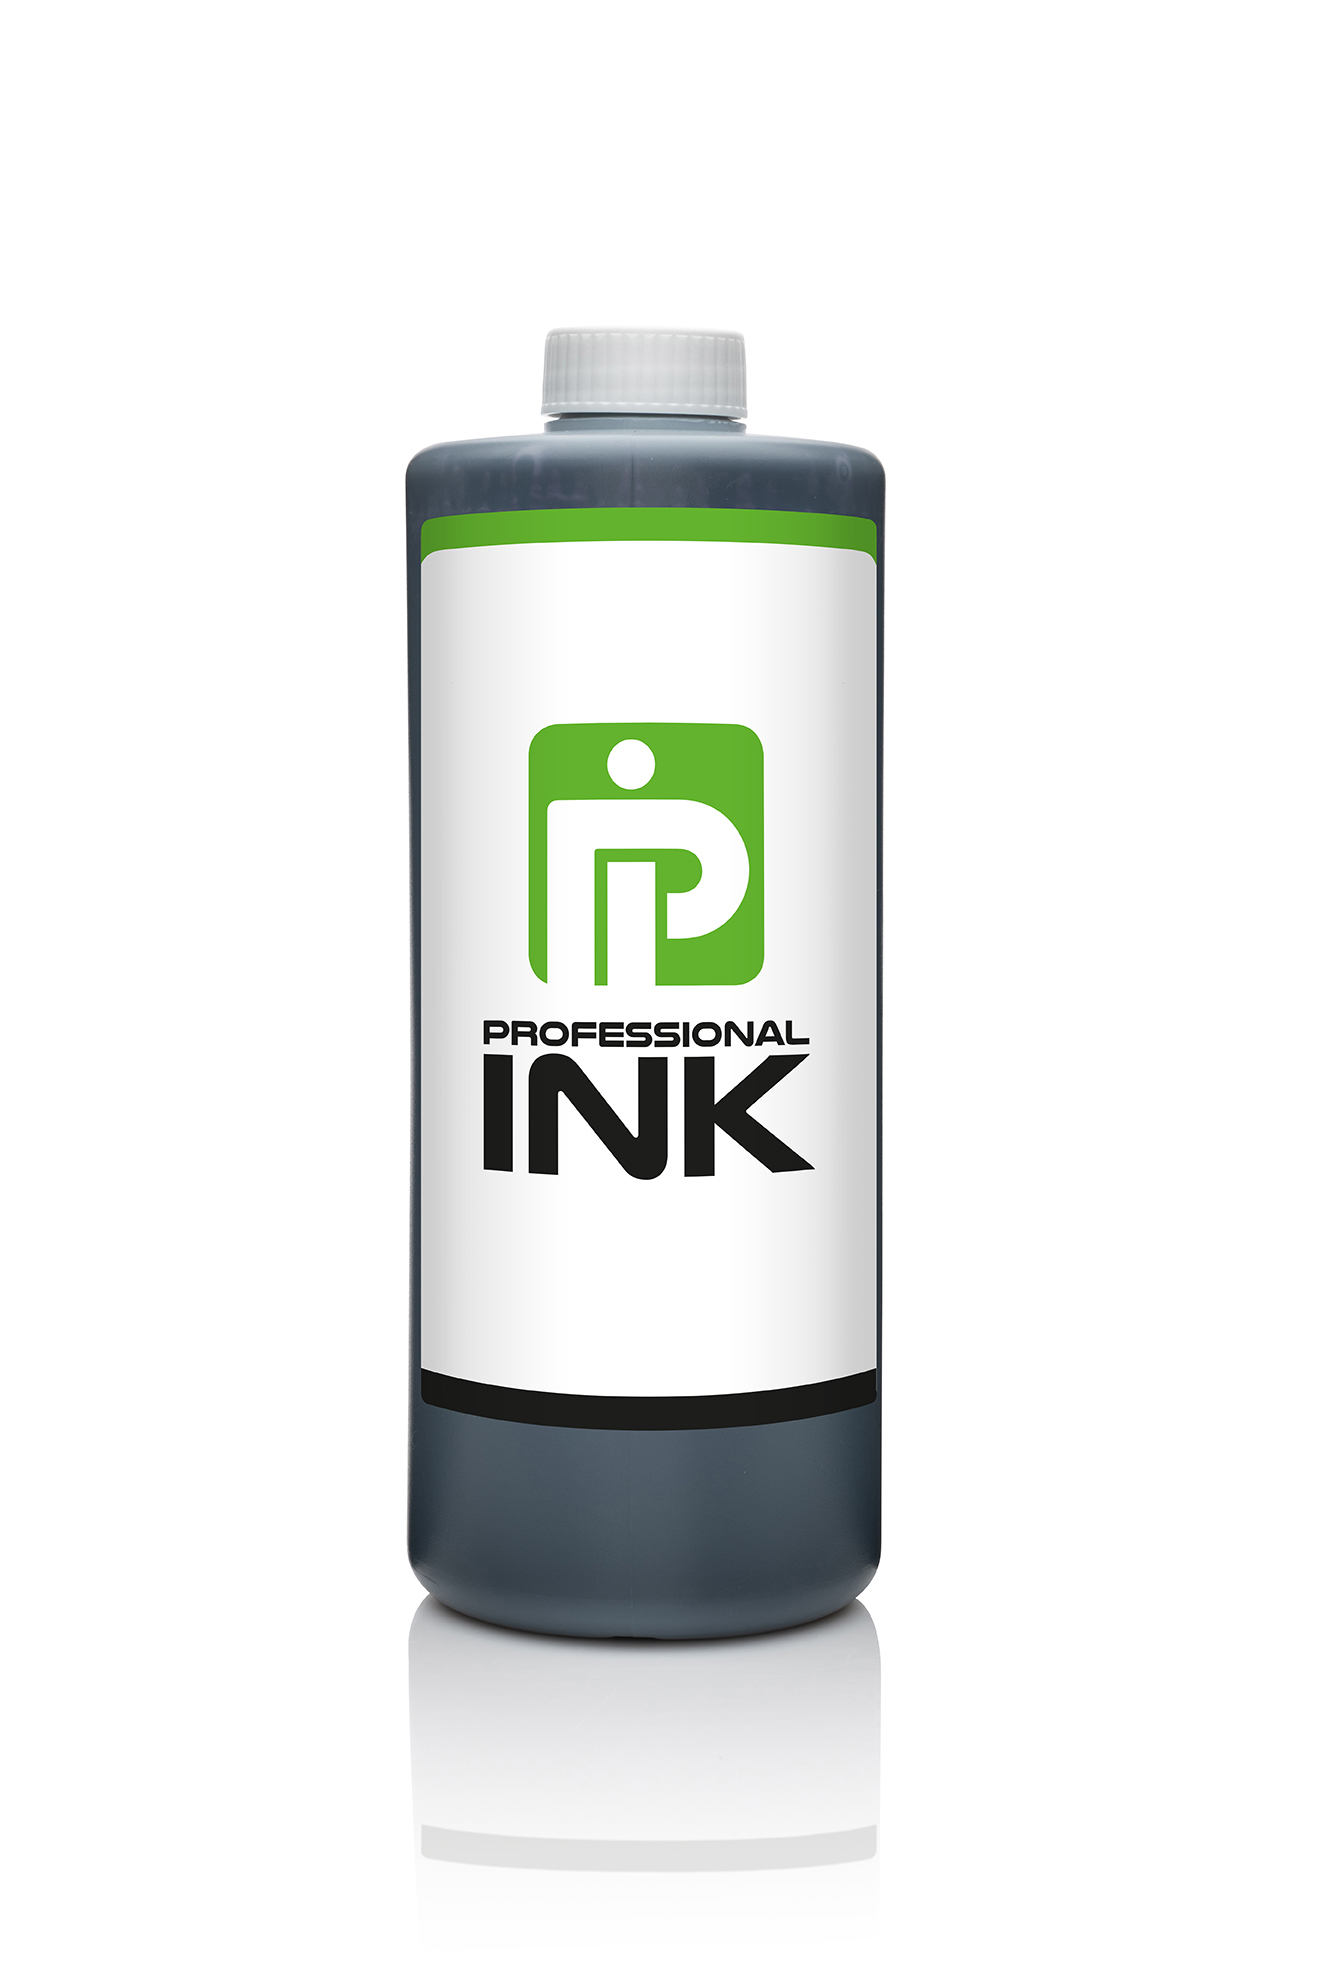 PI-6400: schwarze MEK Tinte für Markem-Imaje Drucker